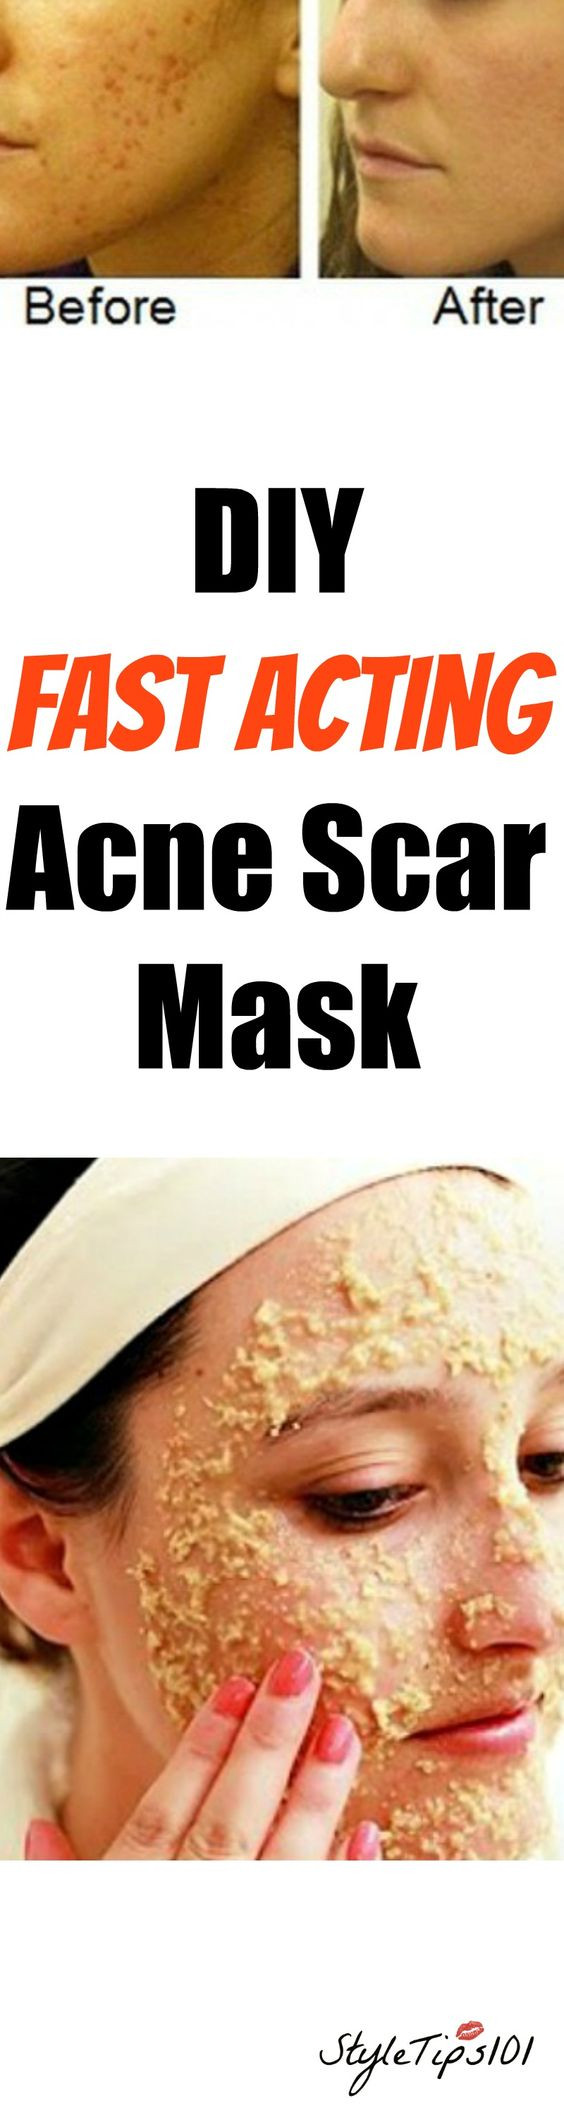 DIY Acne Scar Mask
 DIY Acne Scar Mask